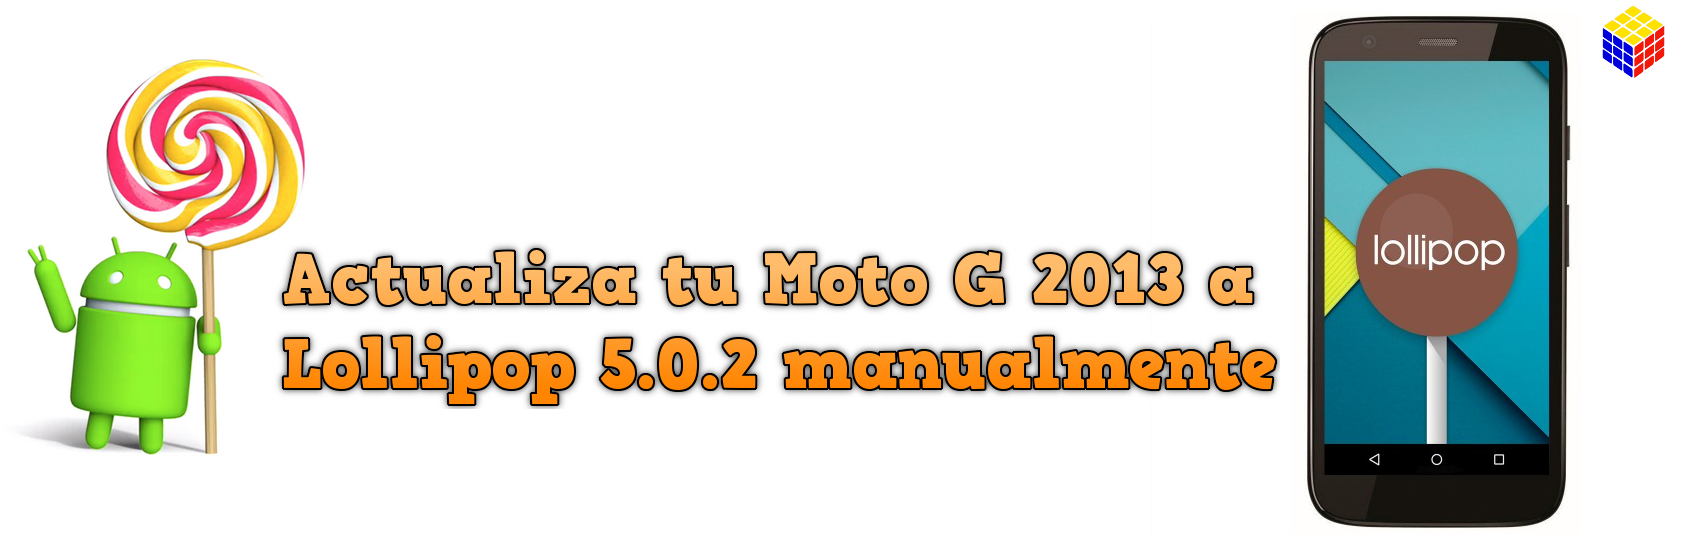 Como actualizar el Moto G 2013 a Lollipop 5.0.2 manualmente (XT1032 y XT1033)